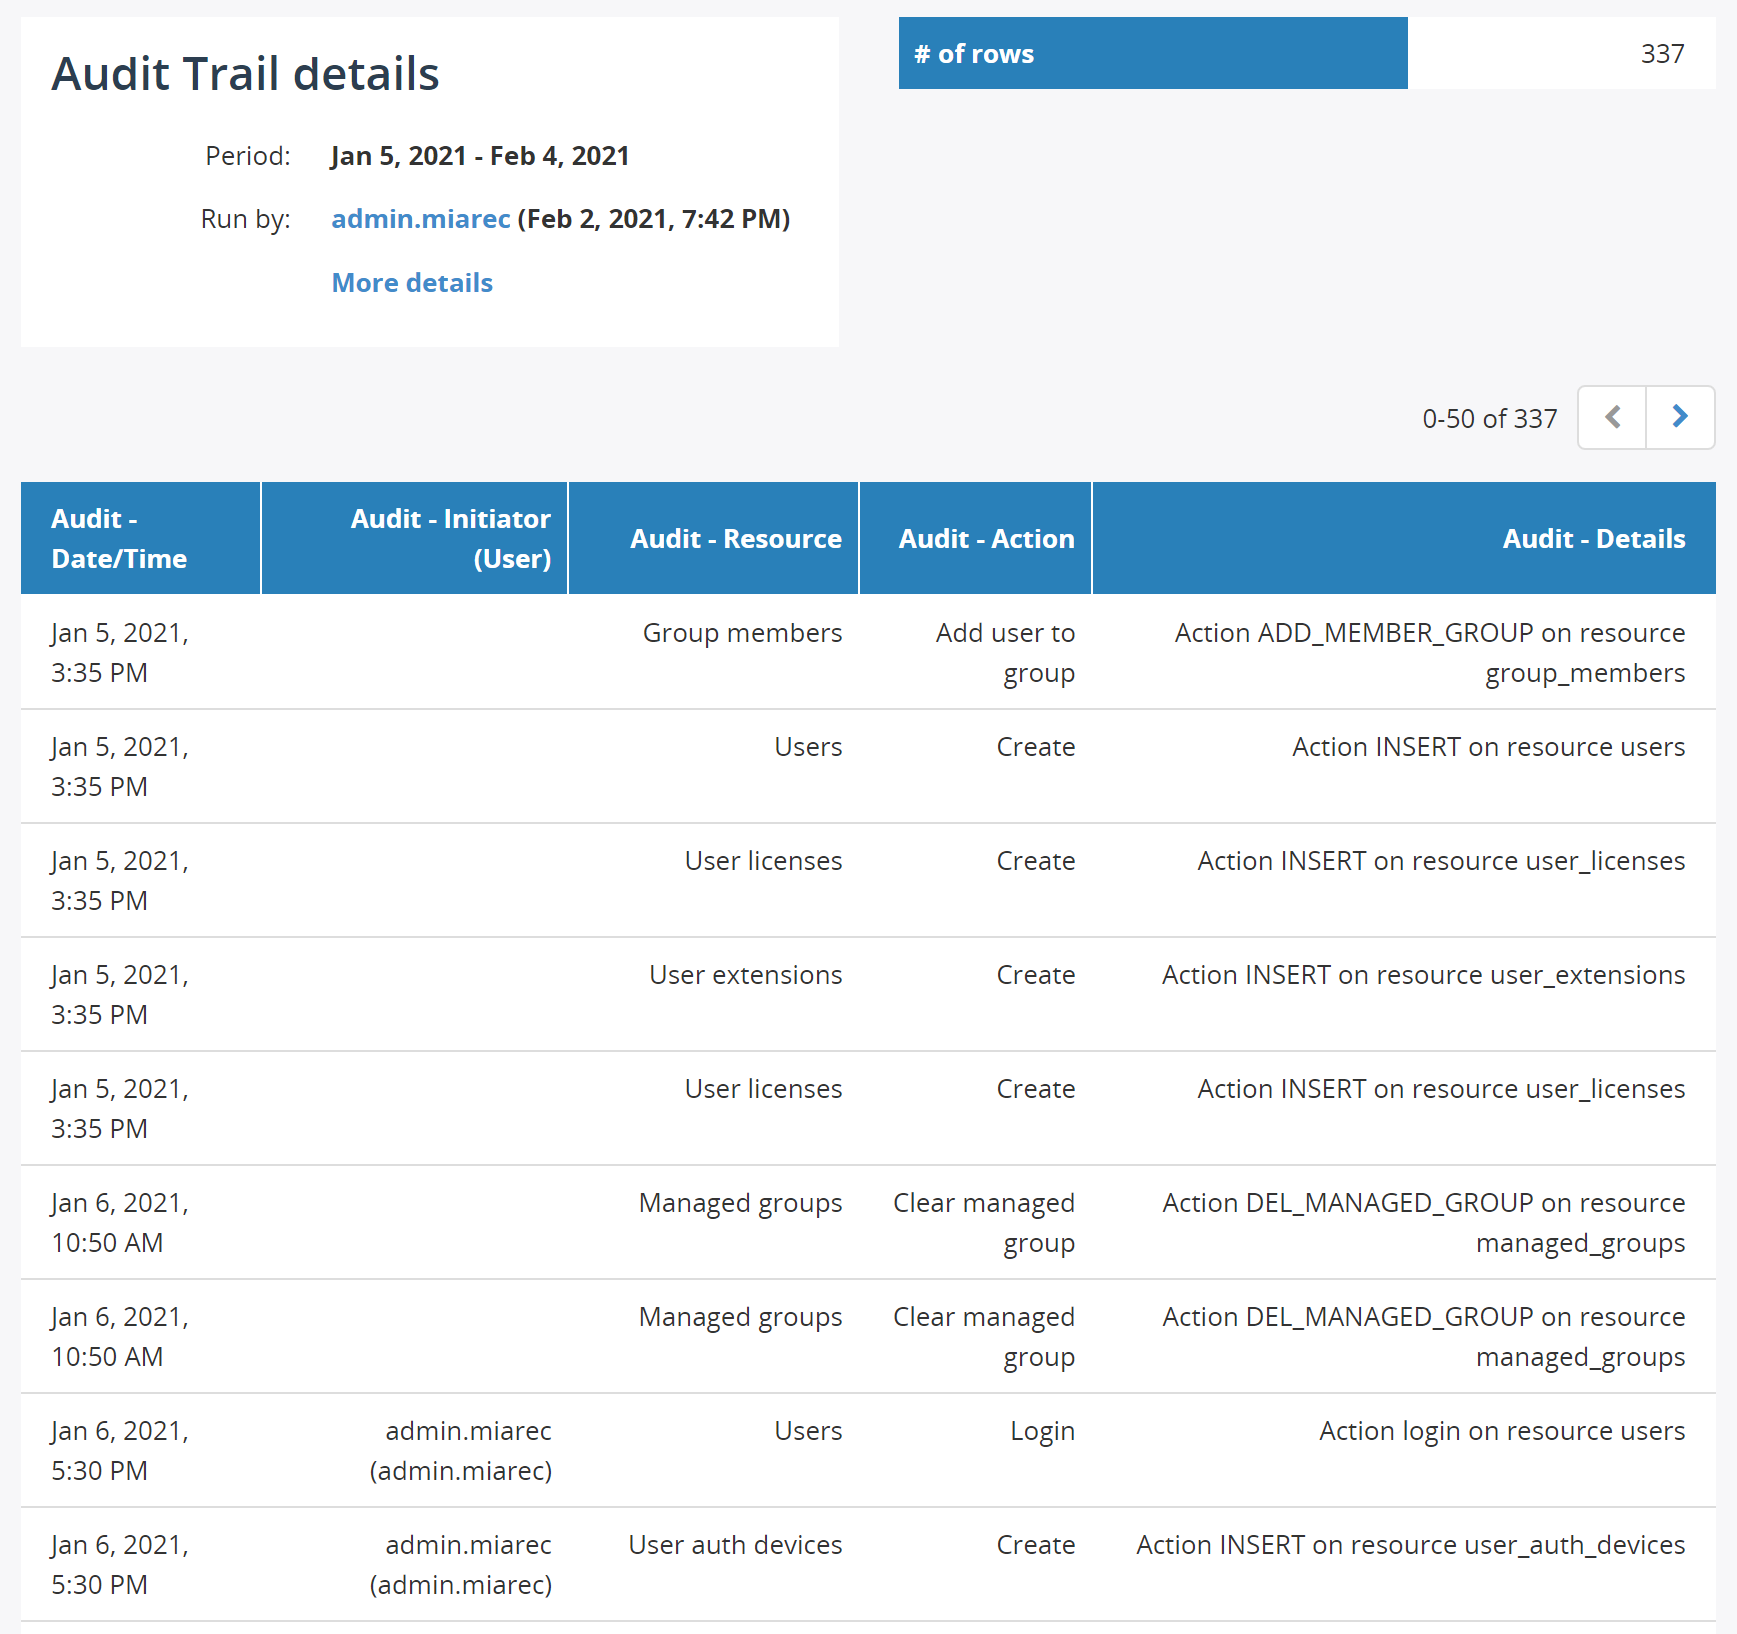 Audit trail details